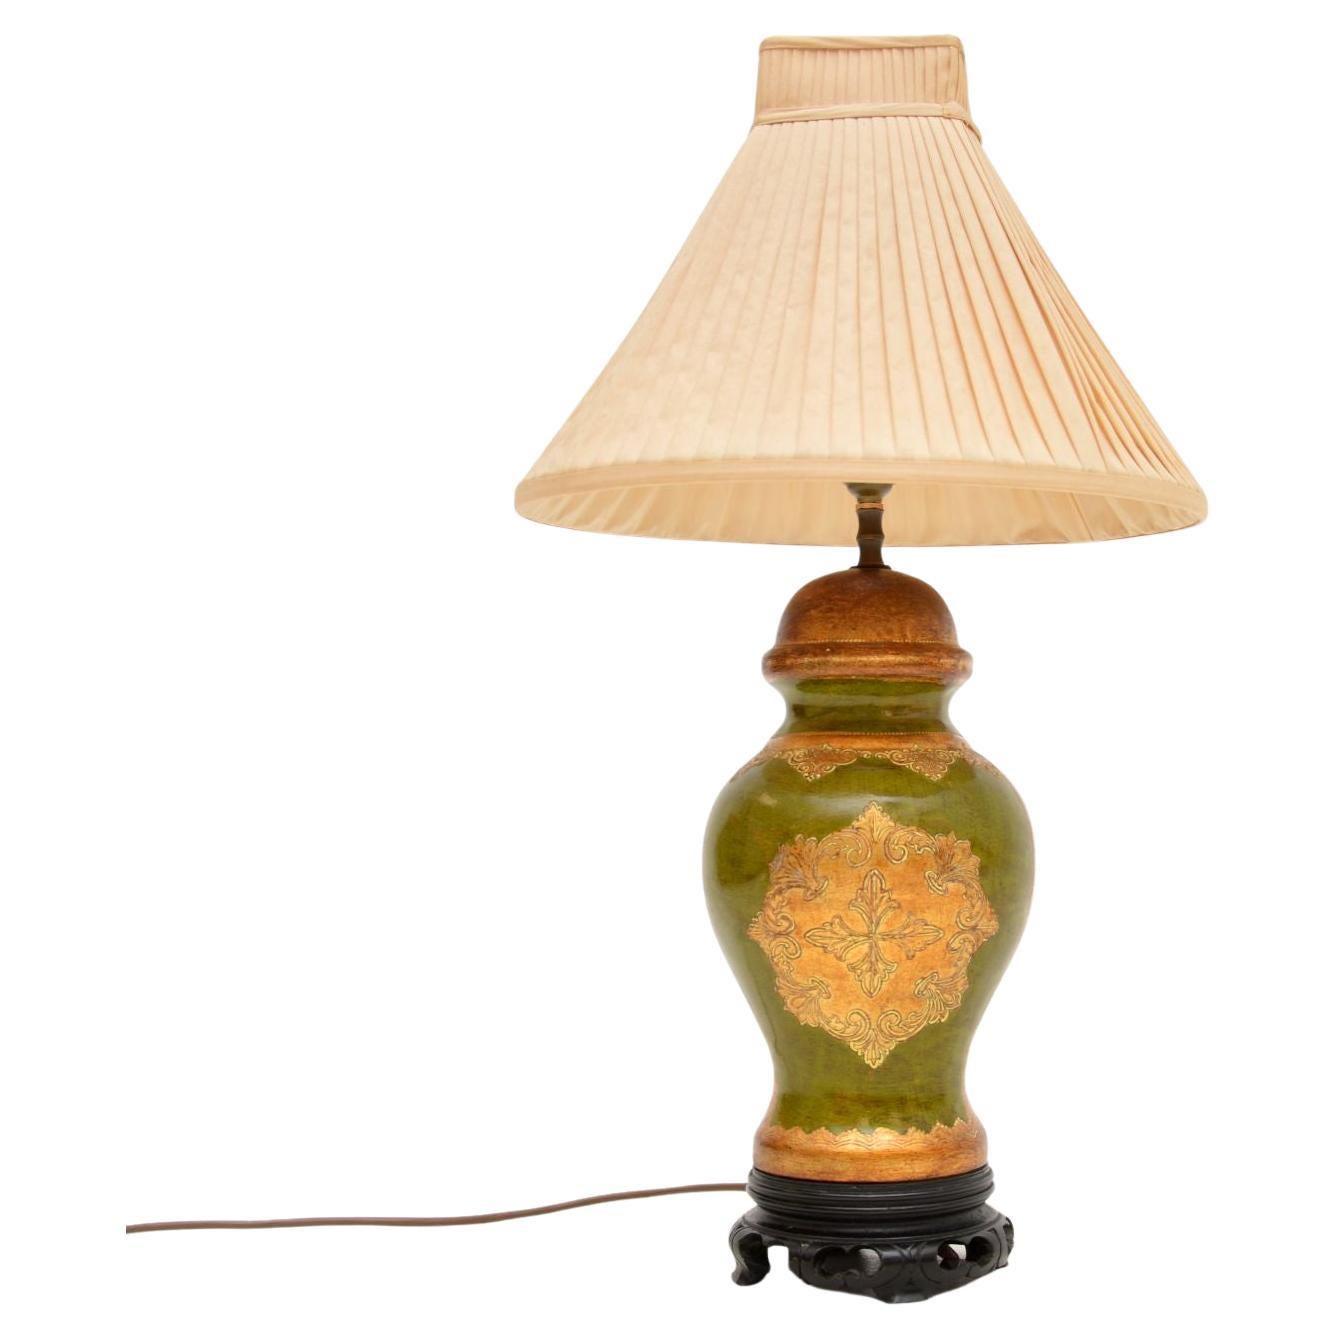 Antique Italian Ceramic Table Lamp